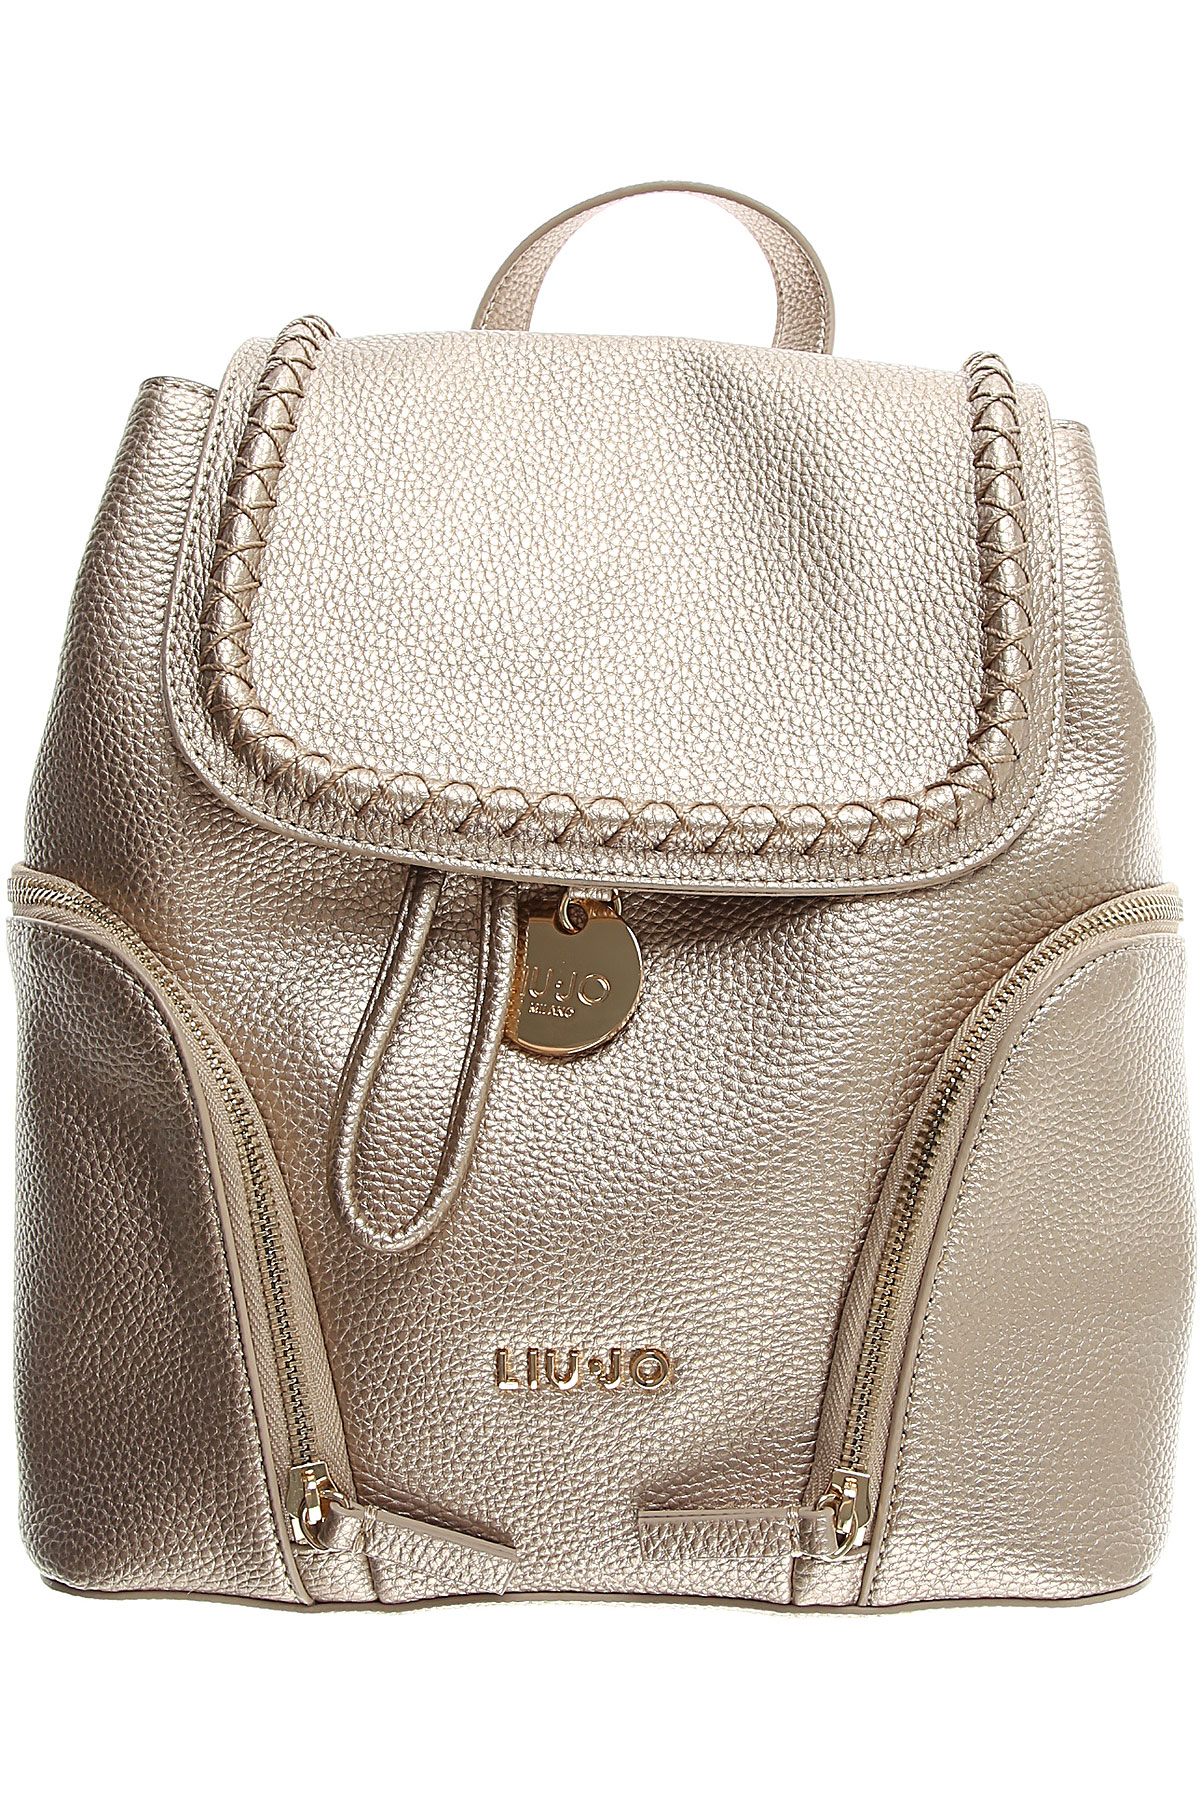 Handbags Liu Jo, Style code: a19016-e0086-00529